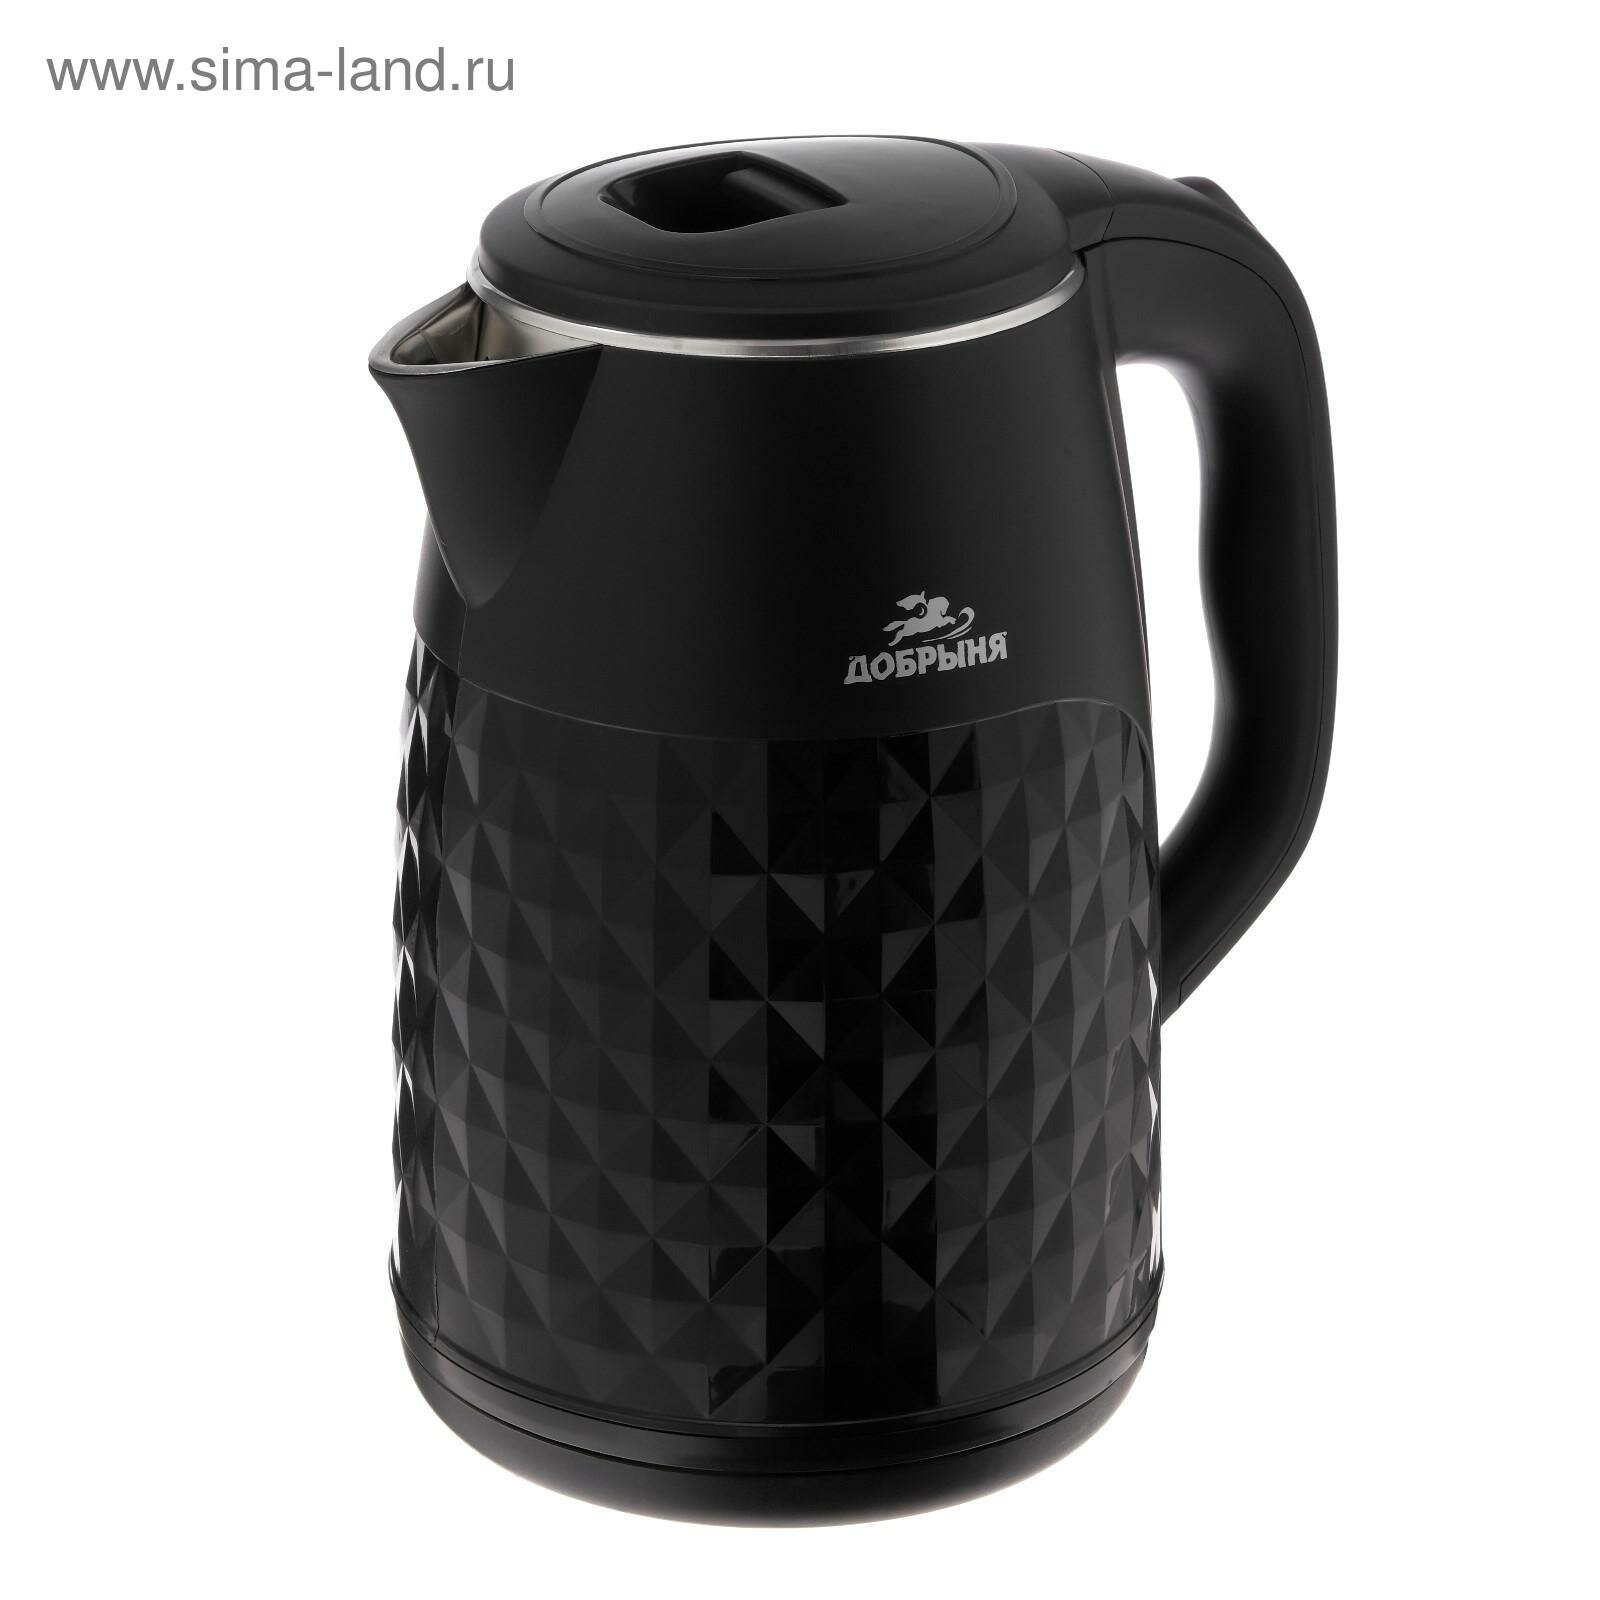 Чайник электрический DO-1237B, пластик, колба металл, 2.8 л, 2200 Вт, чёрный